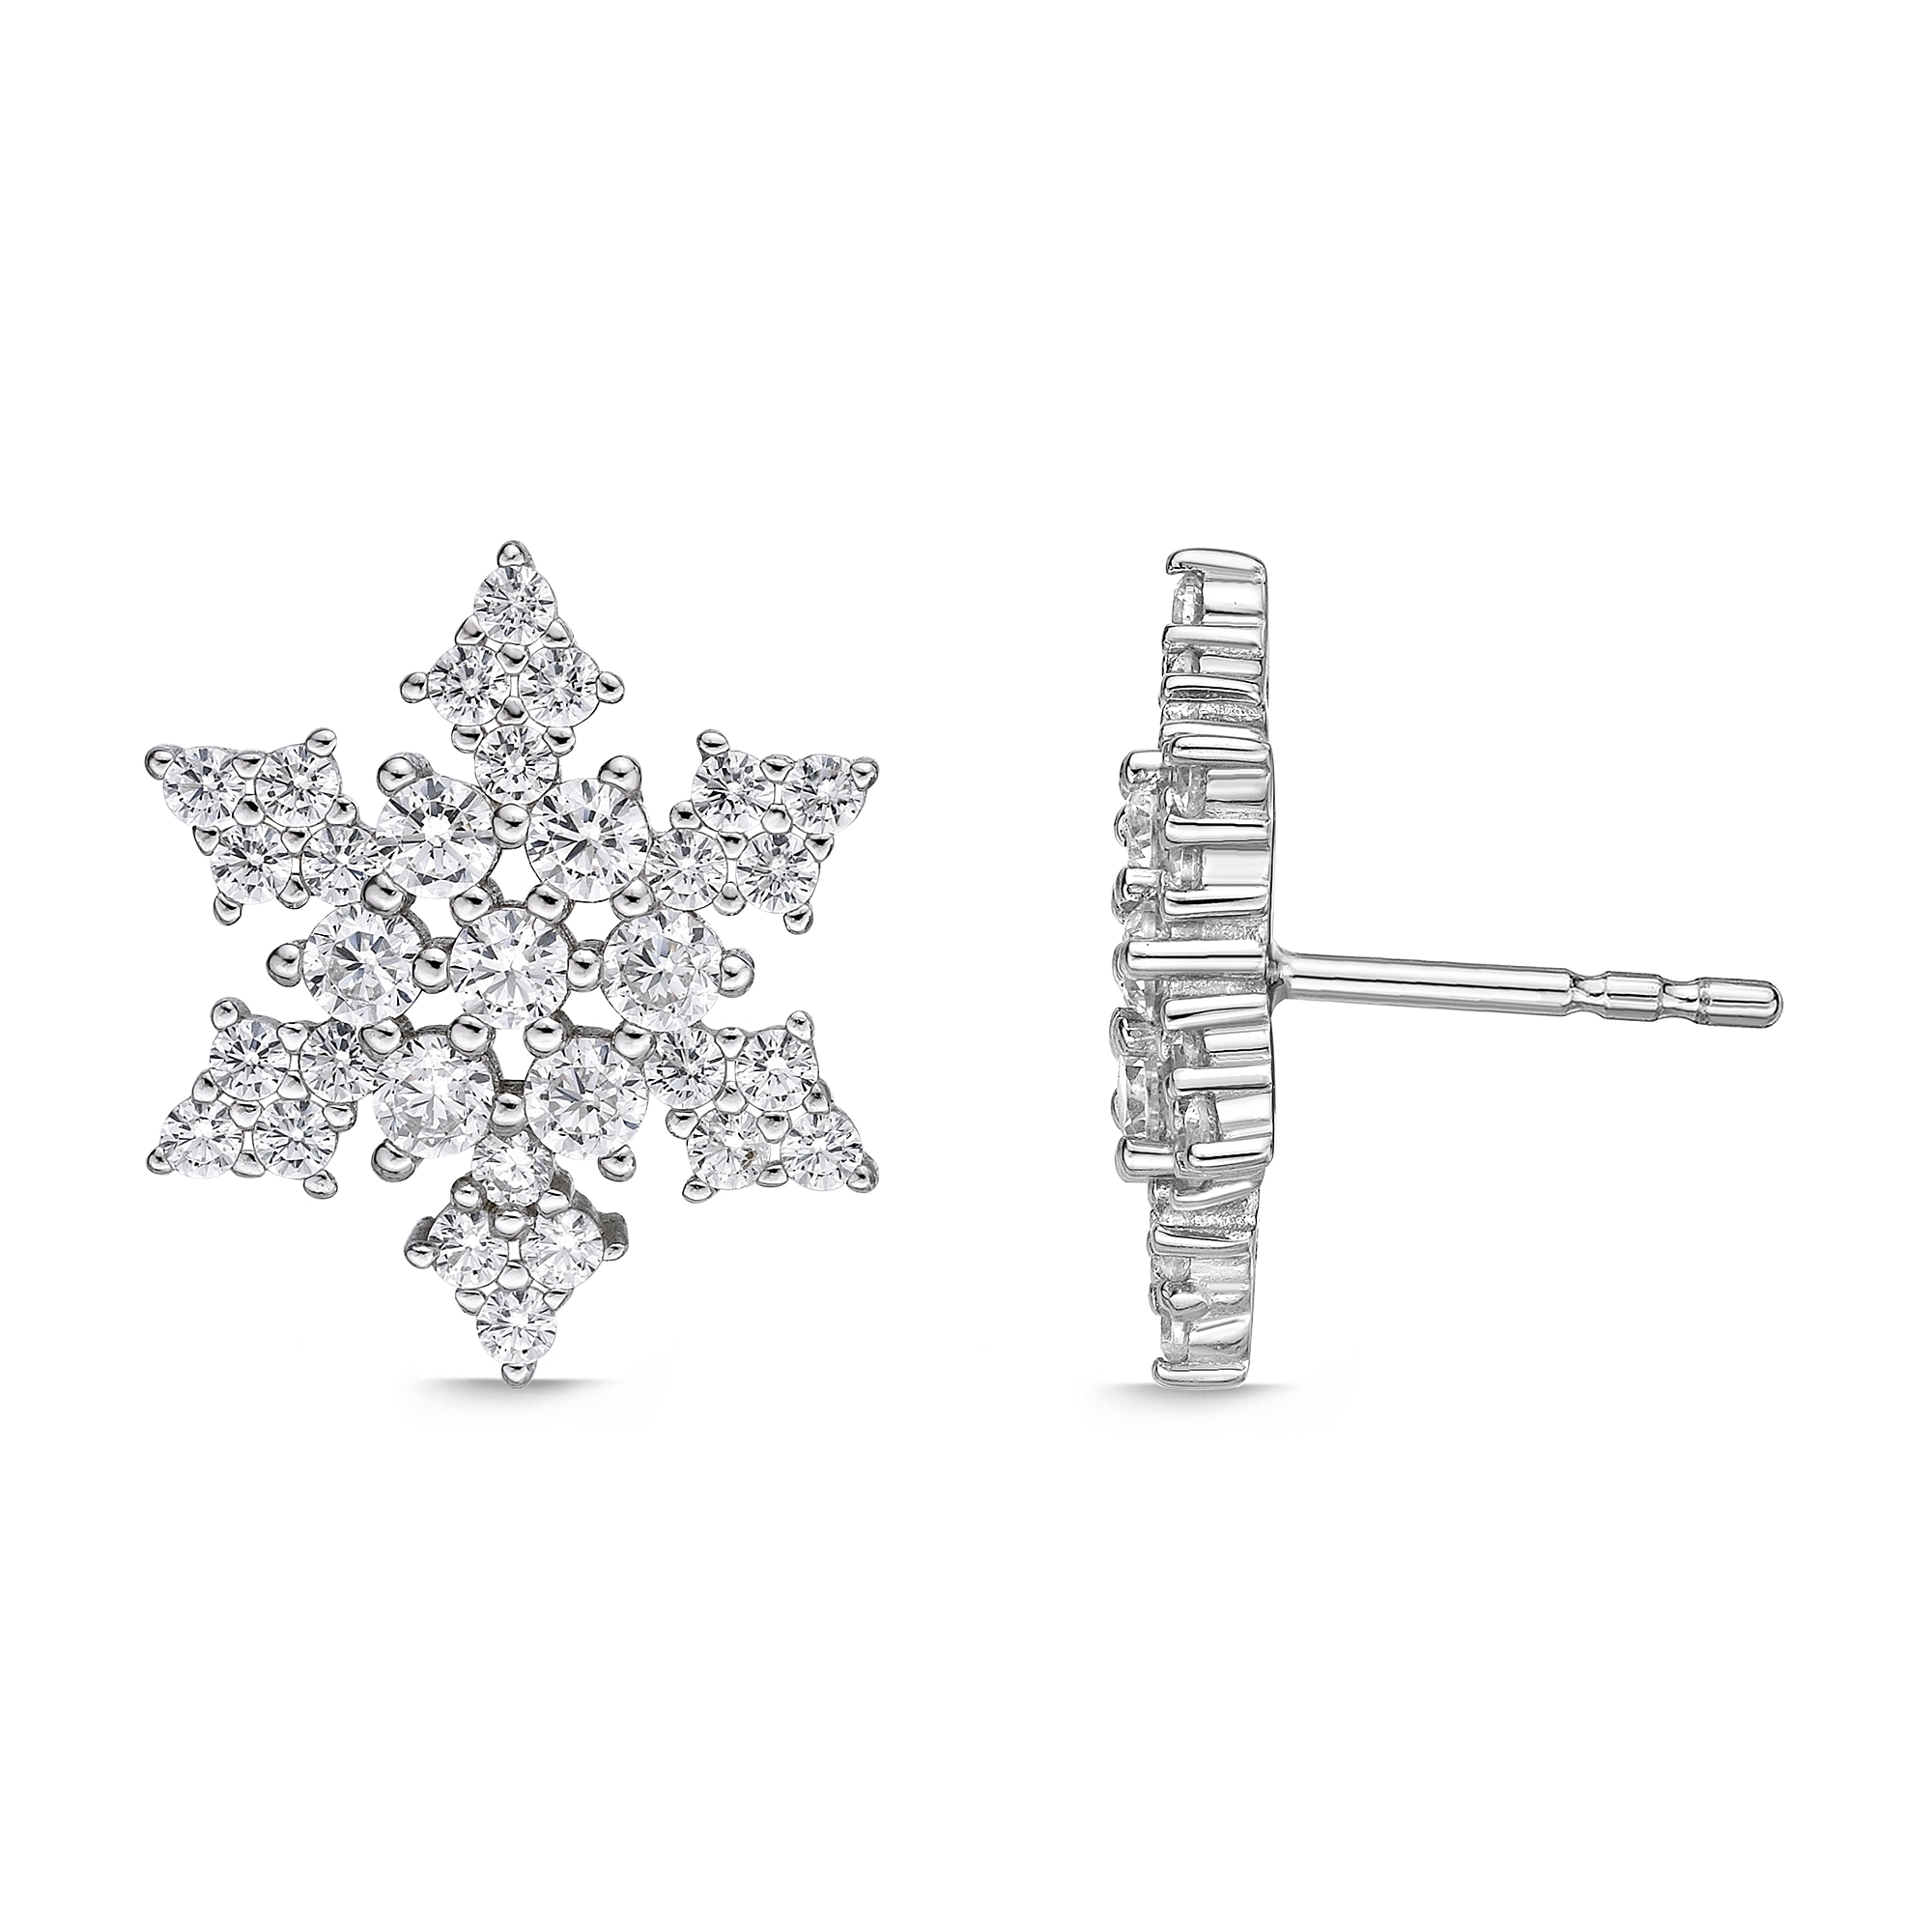 49182-earrings-cubic-zirconia-silver-6.jpg